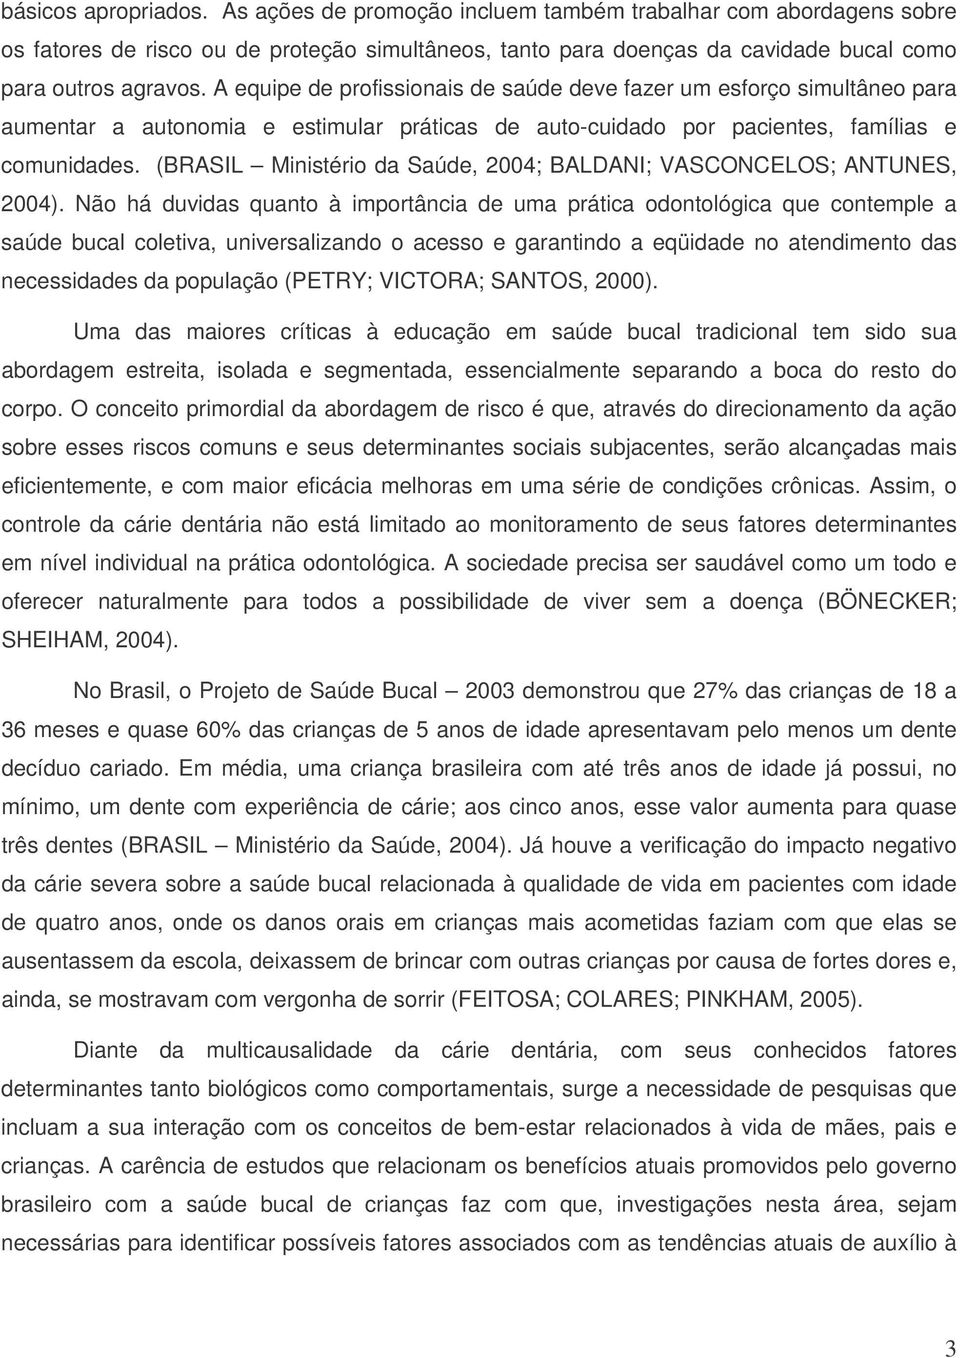 (BRASIL Ministério da Saúde, 2004; BALDANI; VASCONCELOS; ANTUNES, 2004).